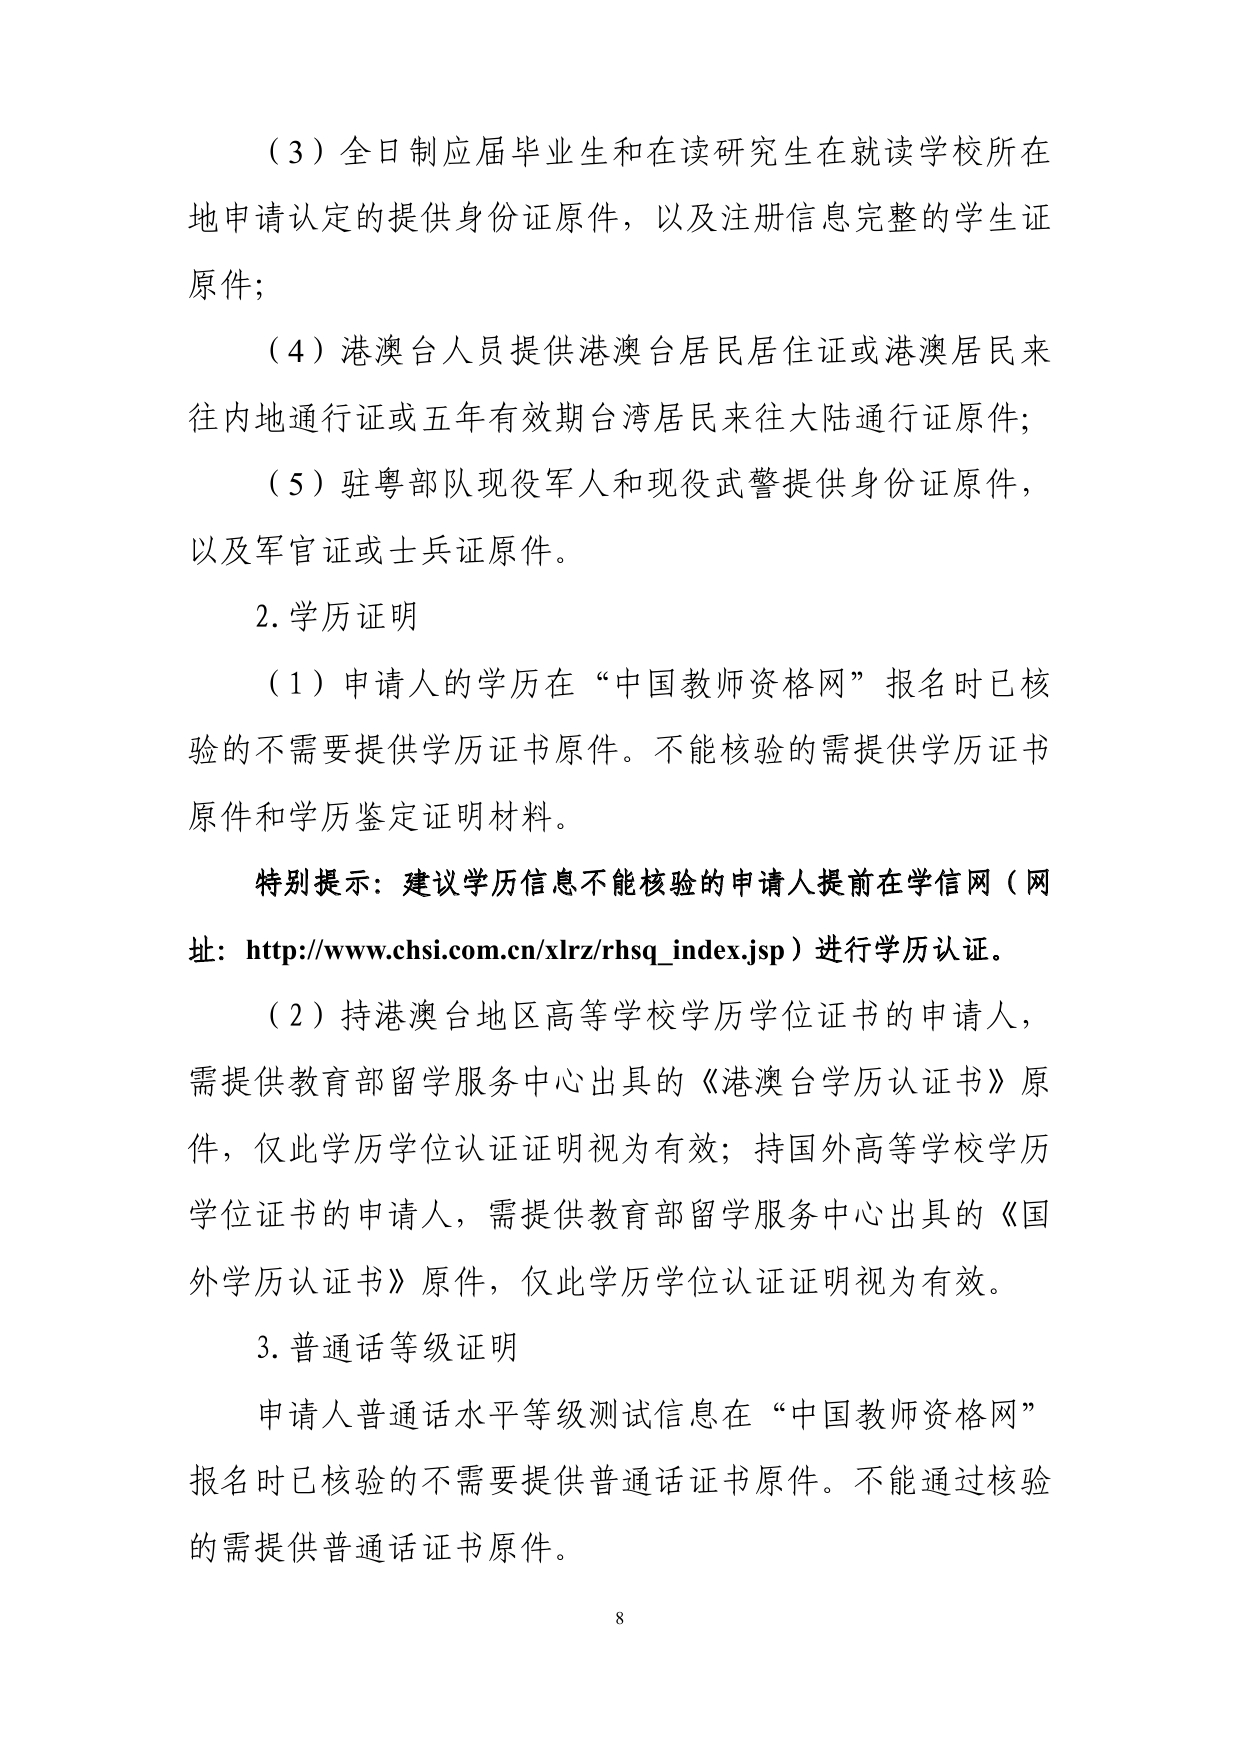 五华县2020年上半年中小学教师资格认定公告0007.jpg